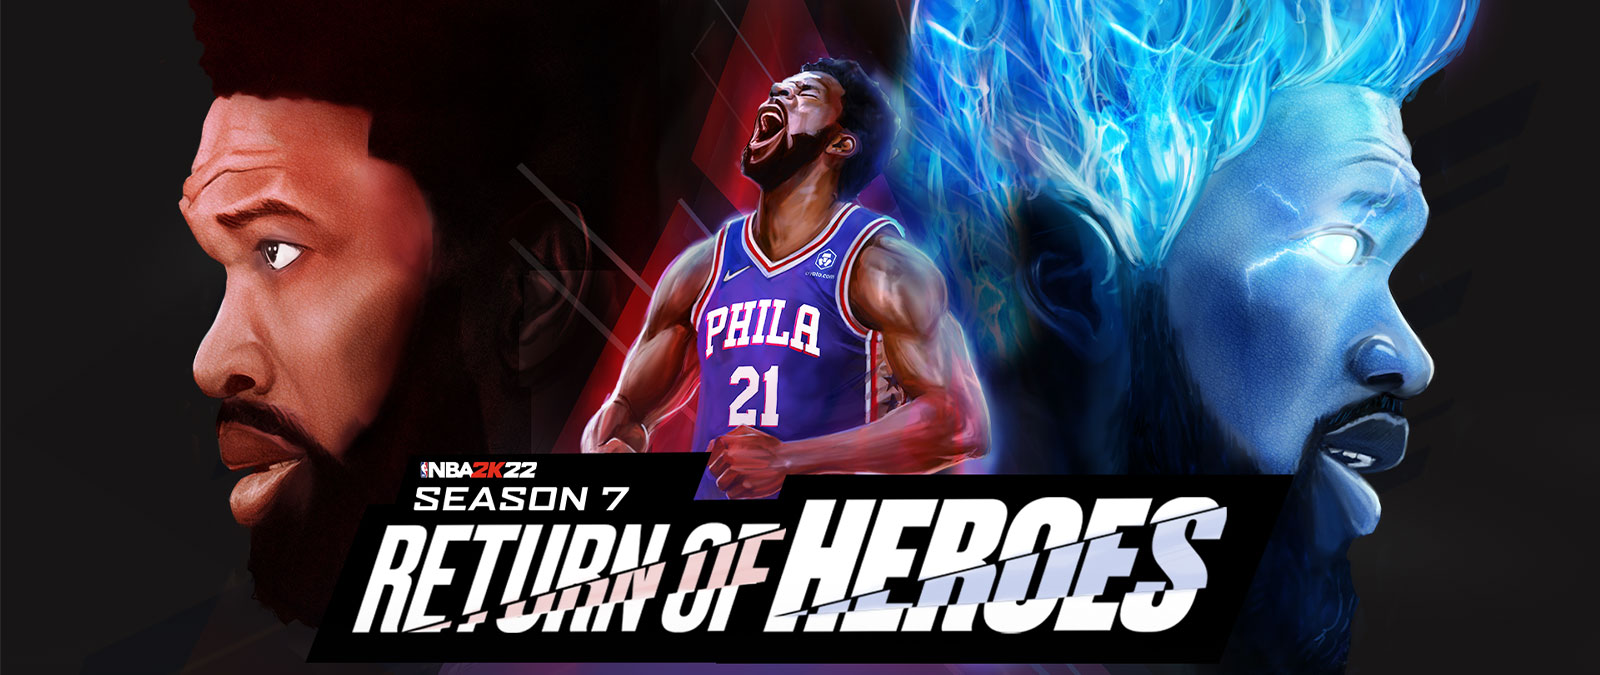 NBA 2K22, Season 7, Return of Heros, en spiller for Philadelphia roper ut mot himmelen og starter opp med blå flammer.